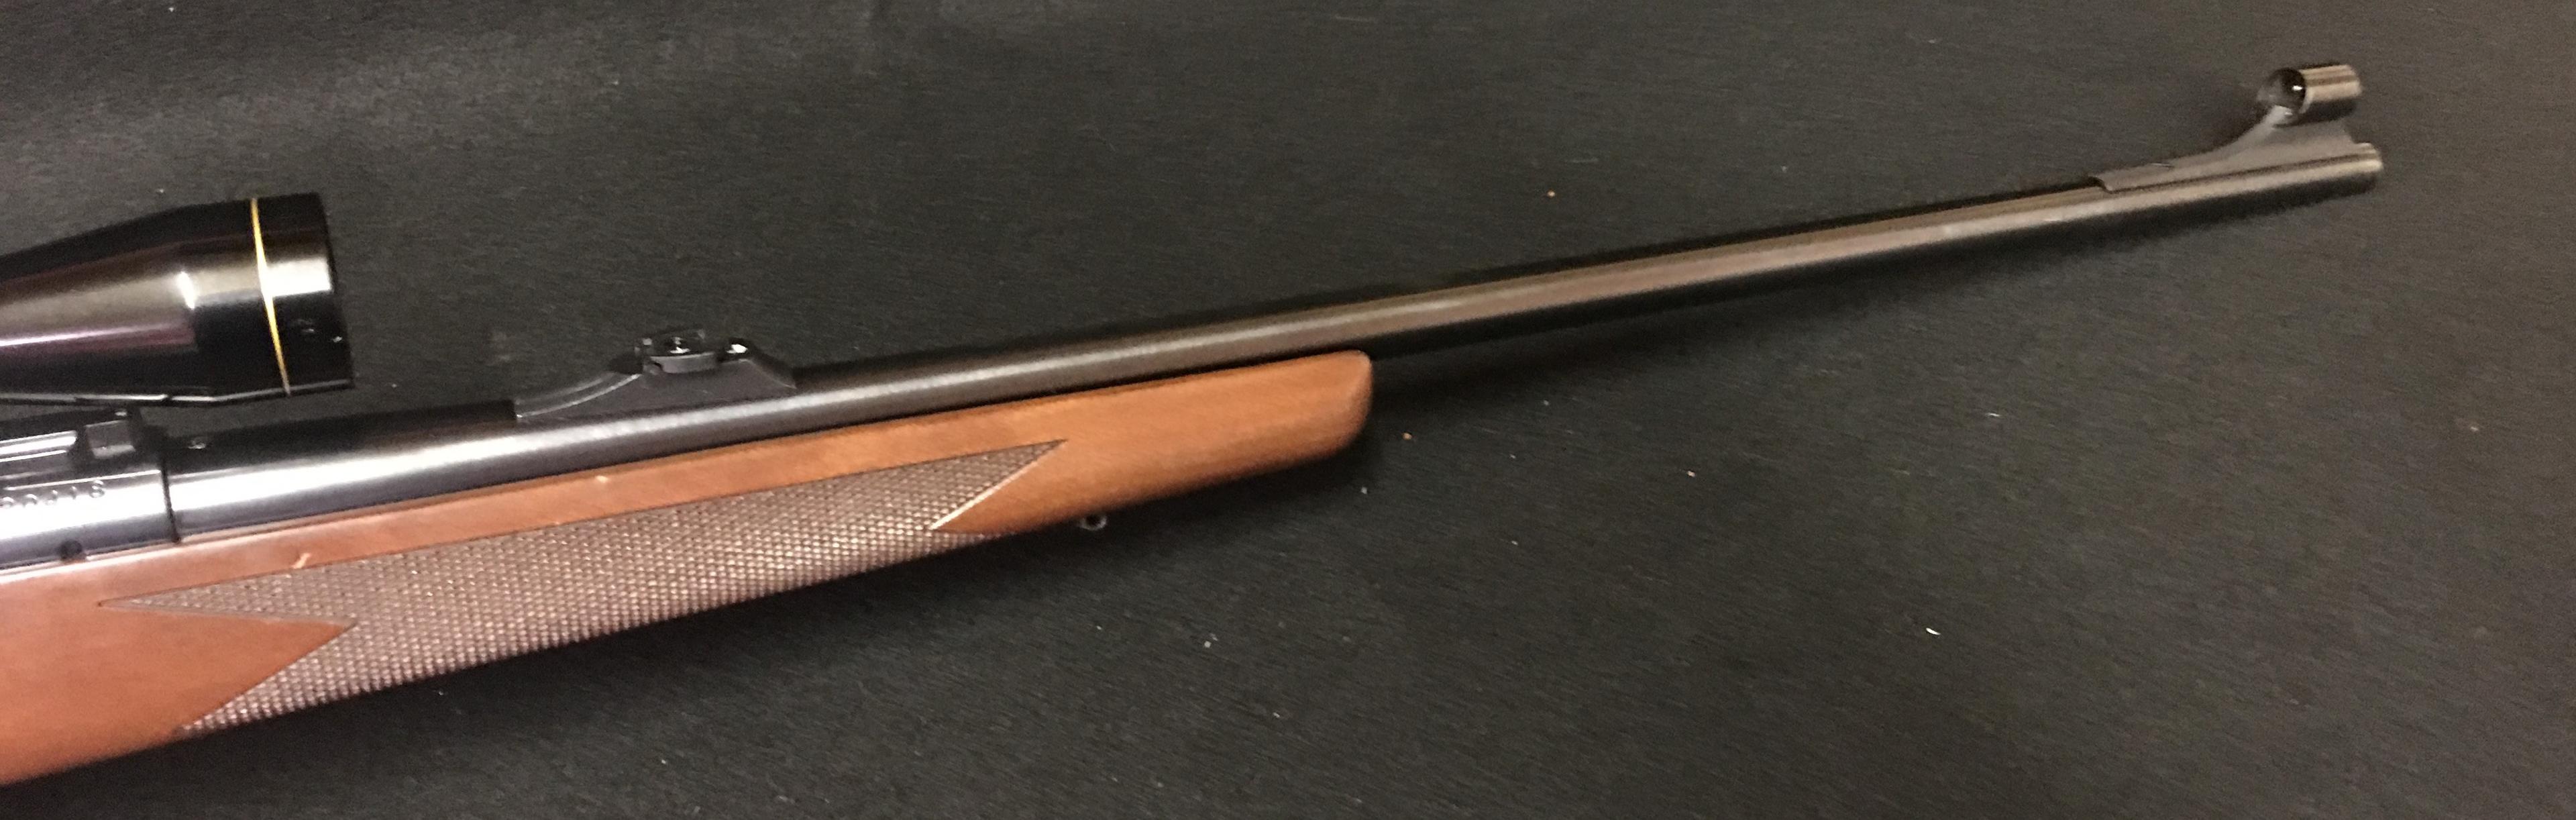 Winchester Model 70 300 Win Mag Super Grade w/Leupold Scope